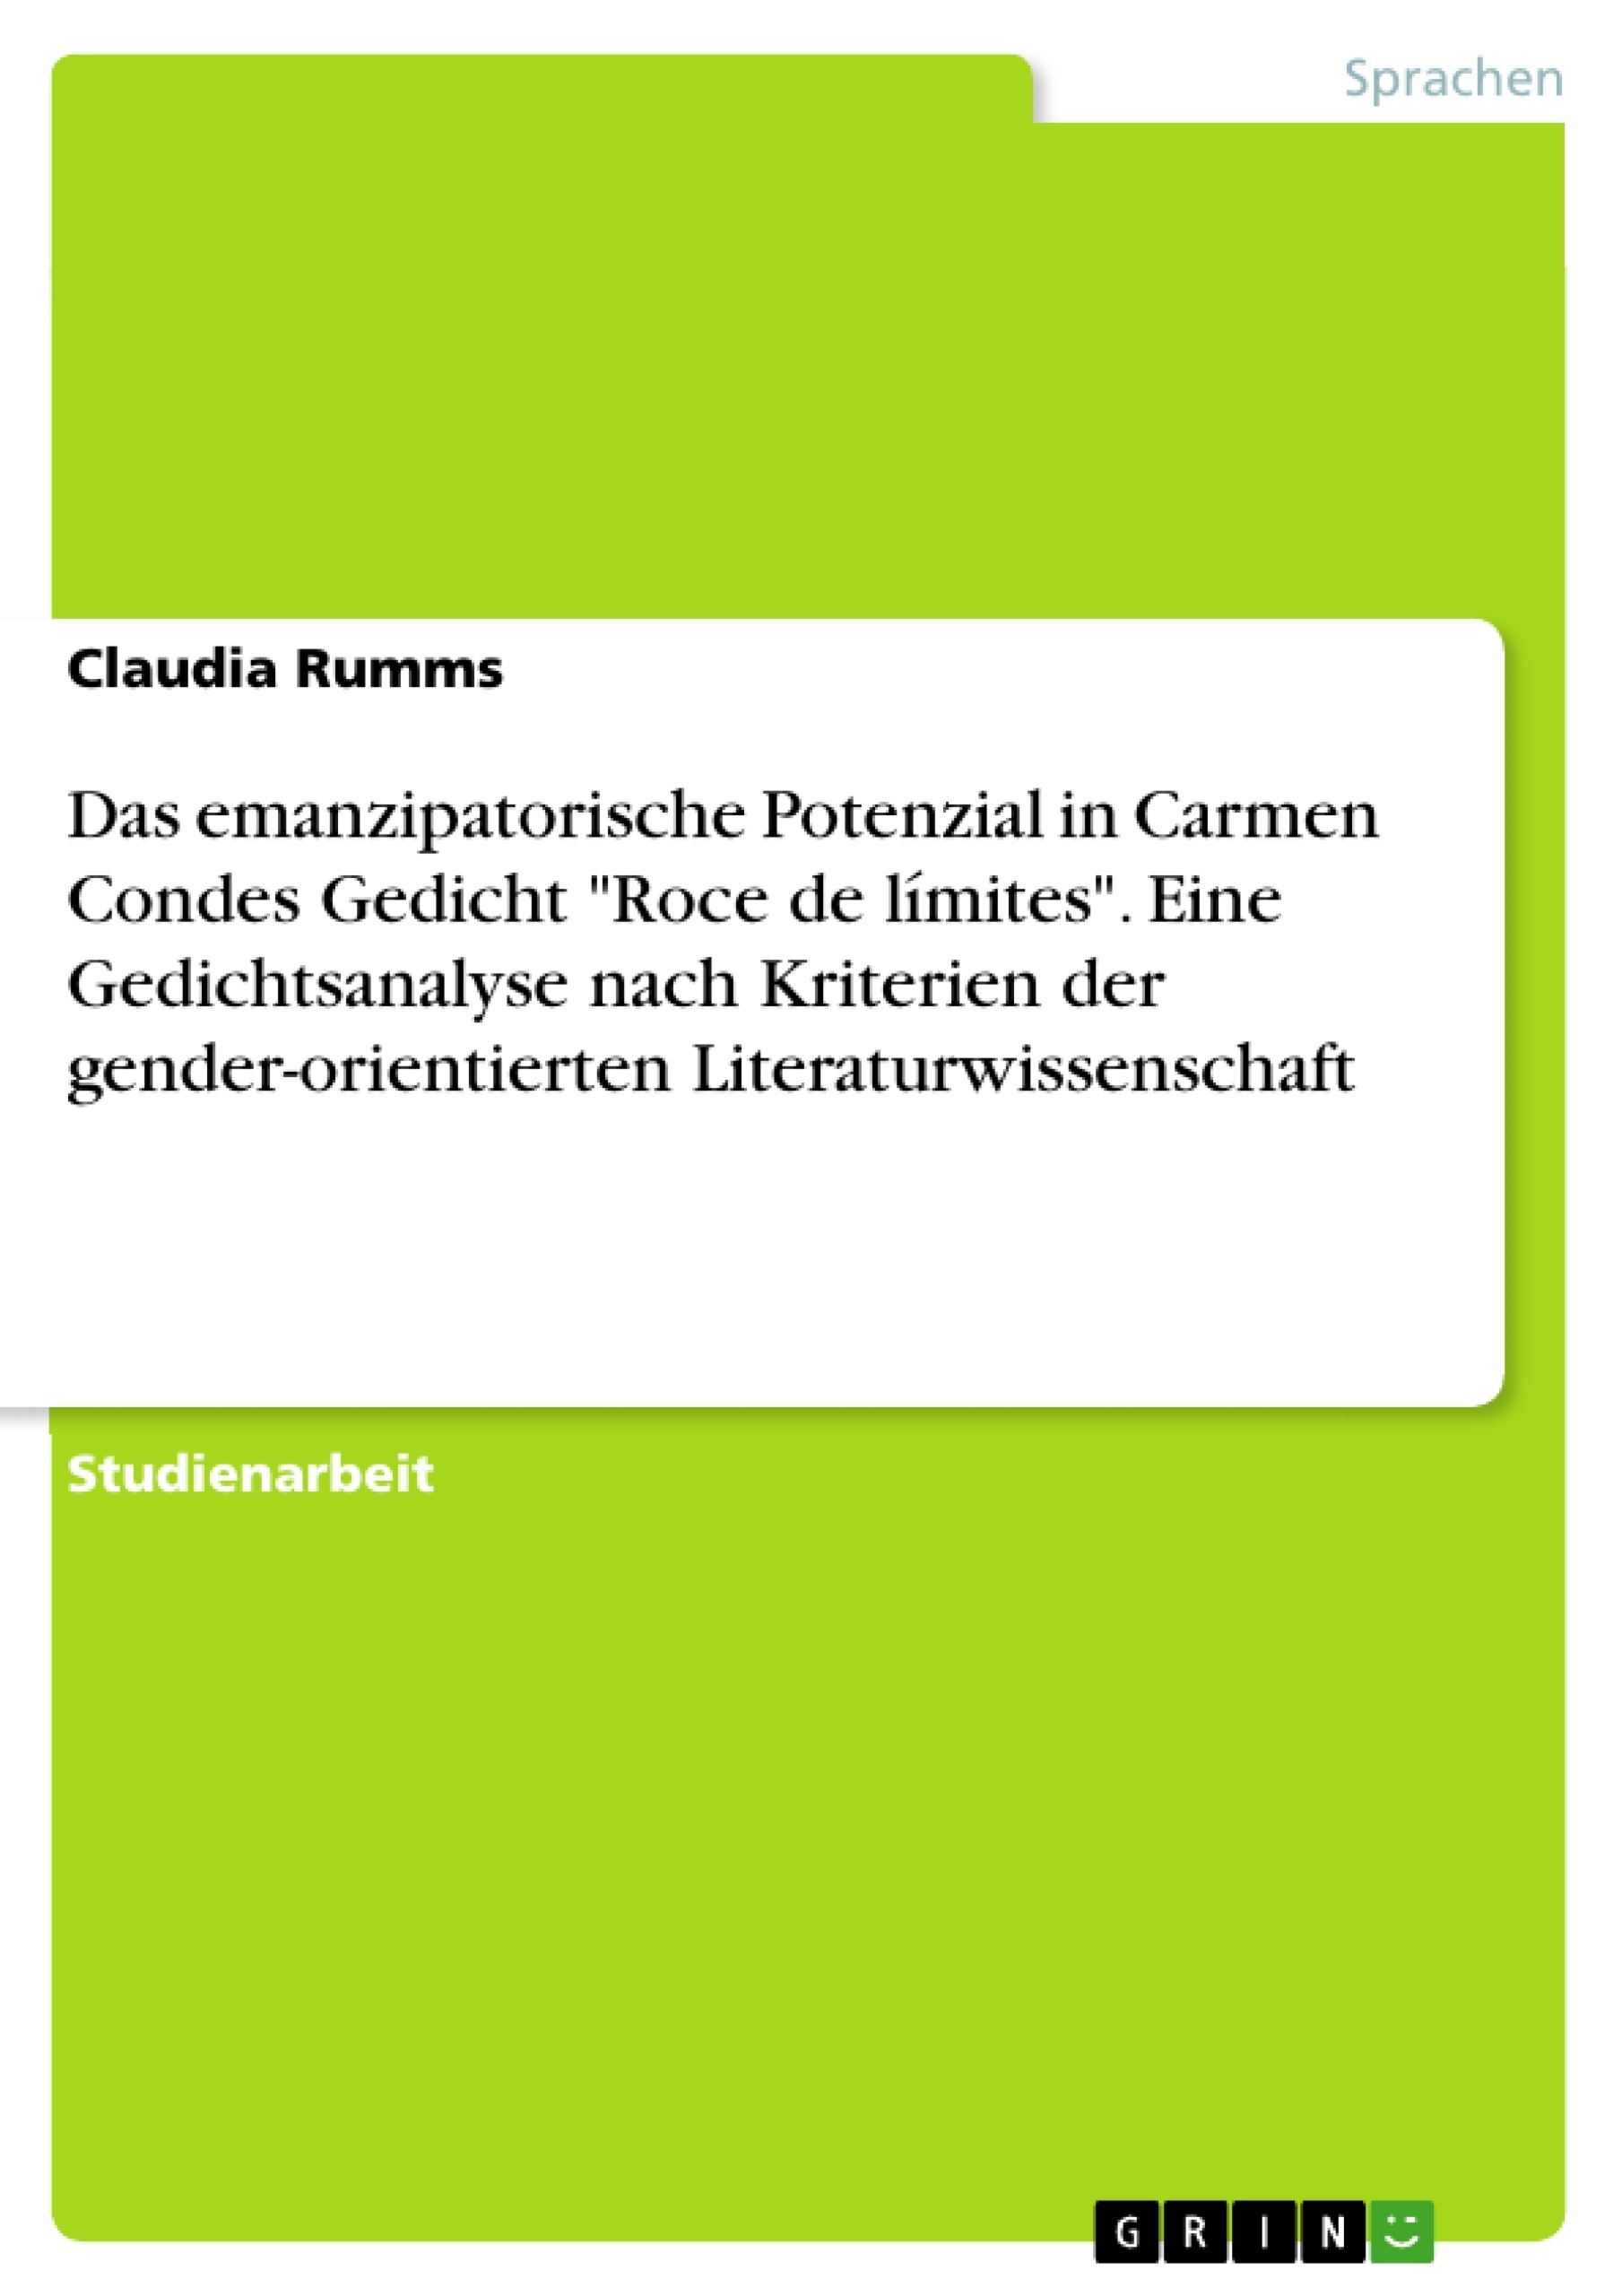 Titel: Das emanzipatorische Potenzial in Carmen Condes Gedicht "Roce de límites". Eine Gedichtsanalyse nach Kriterien der gender-orientierten Literaturwissenschaft